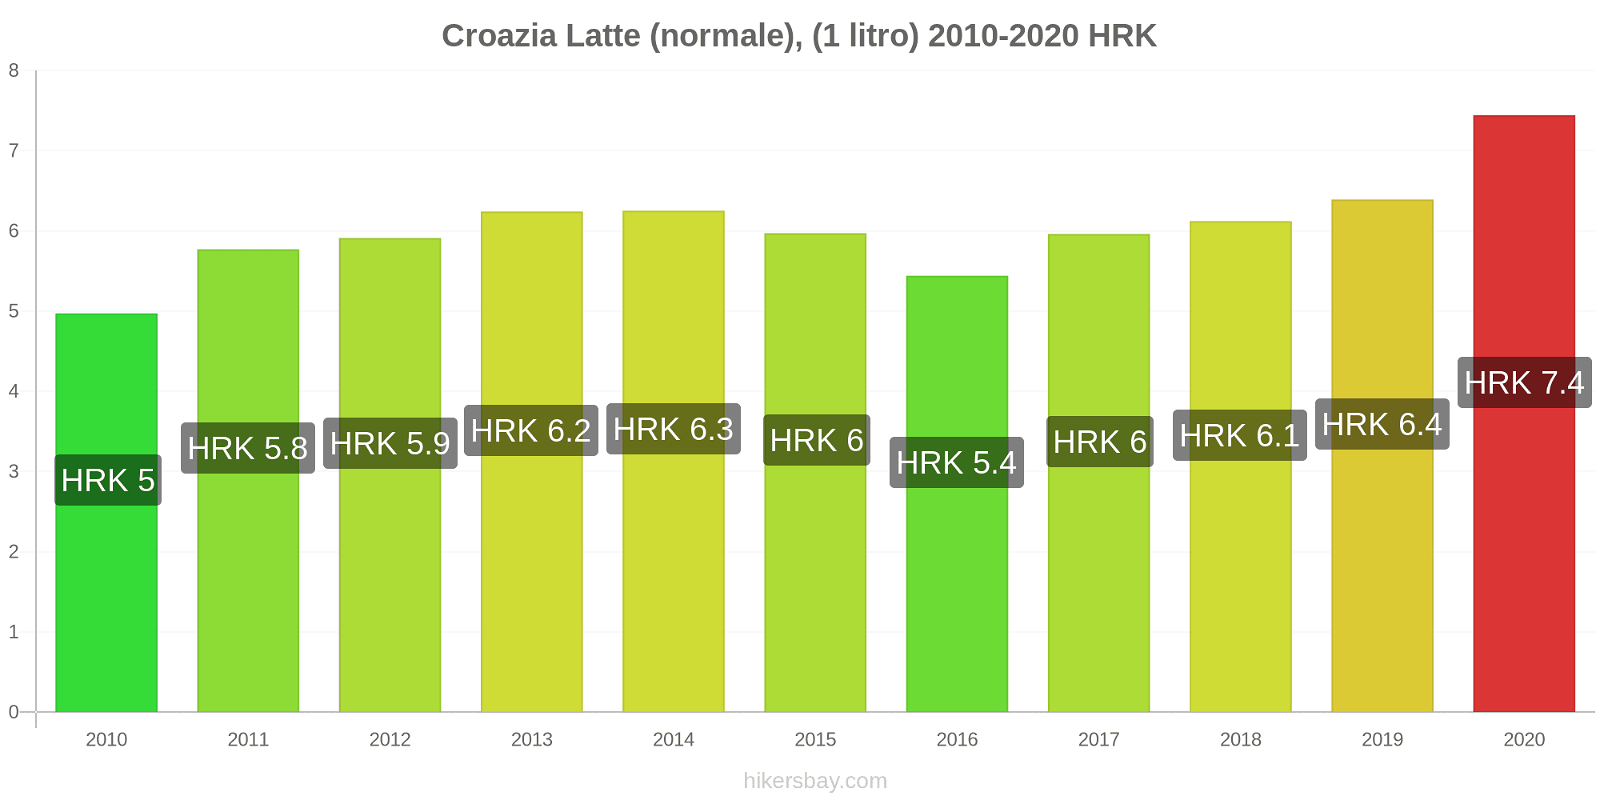 Croazia variazioni di prezzo Latte (1 litro) hikersbay.com